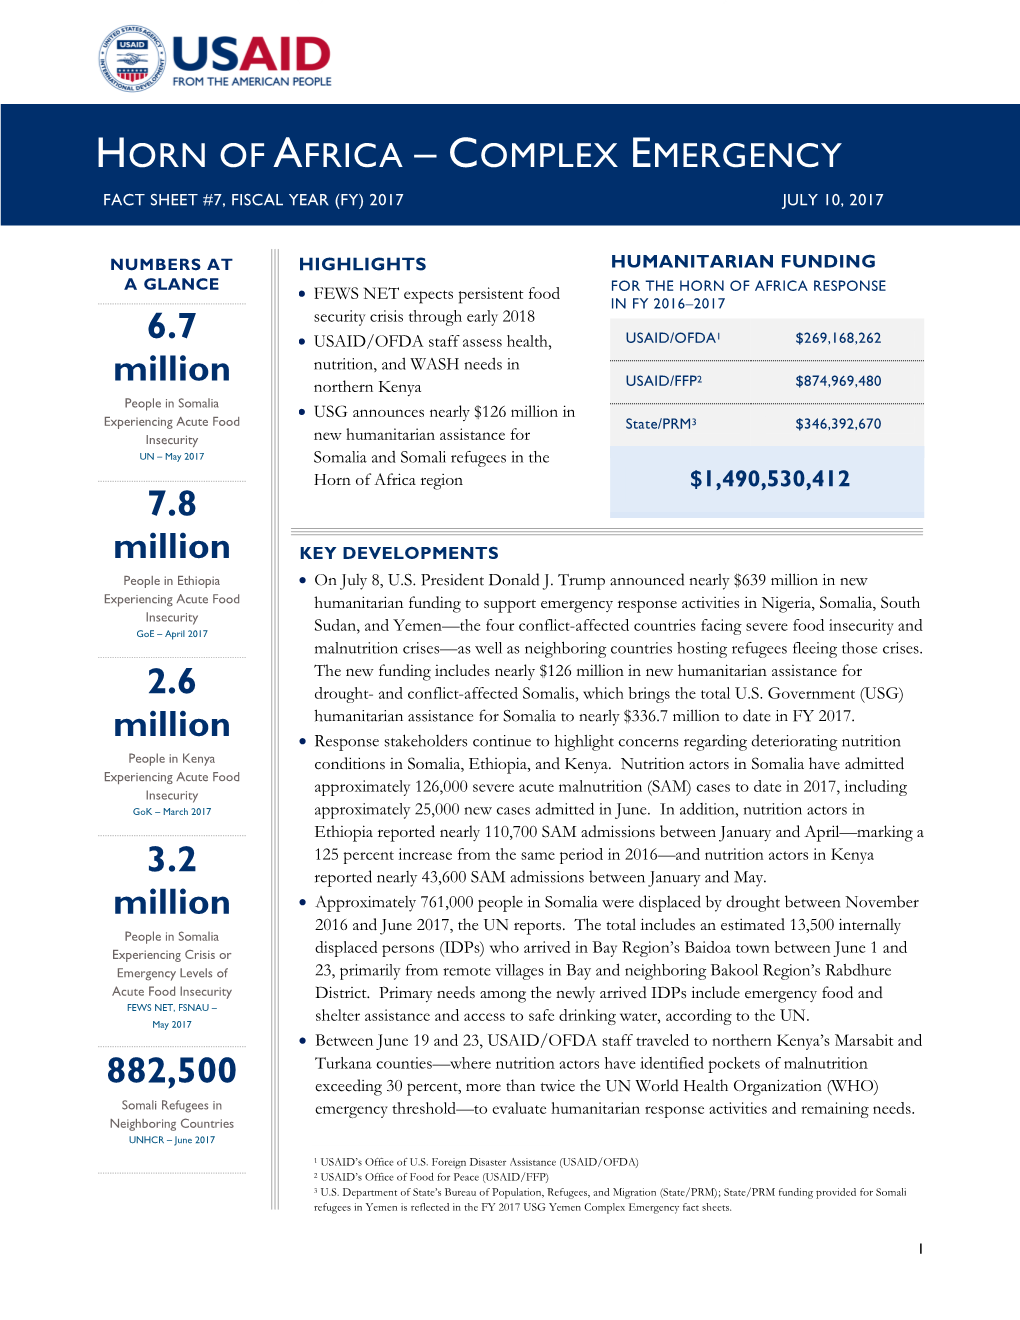 Horn of Africa Complex Emergency Fact Sheet #7